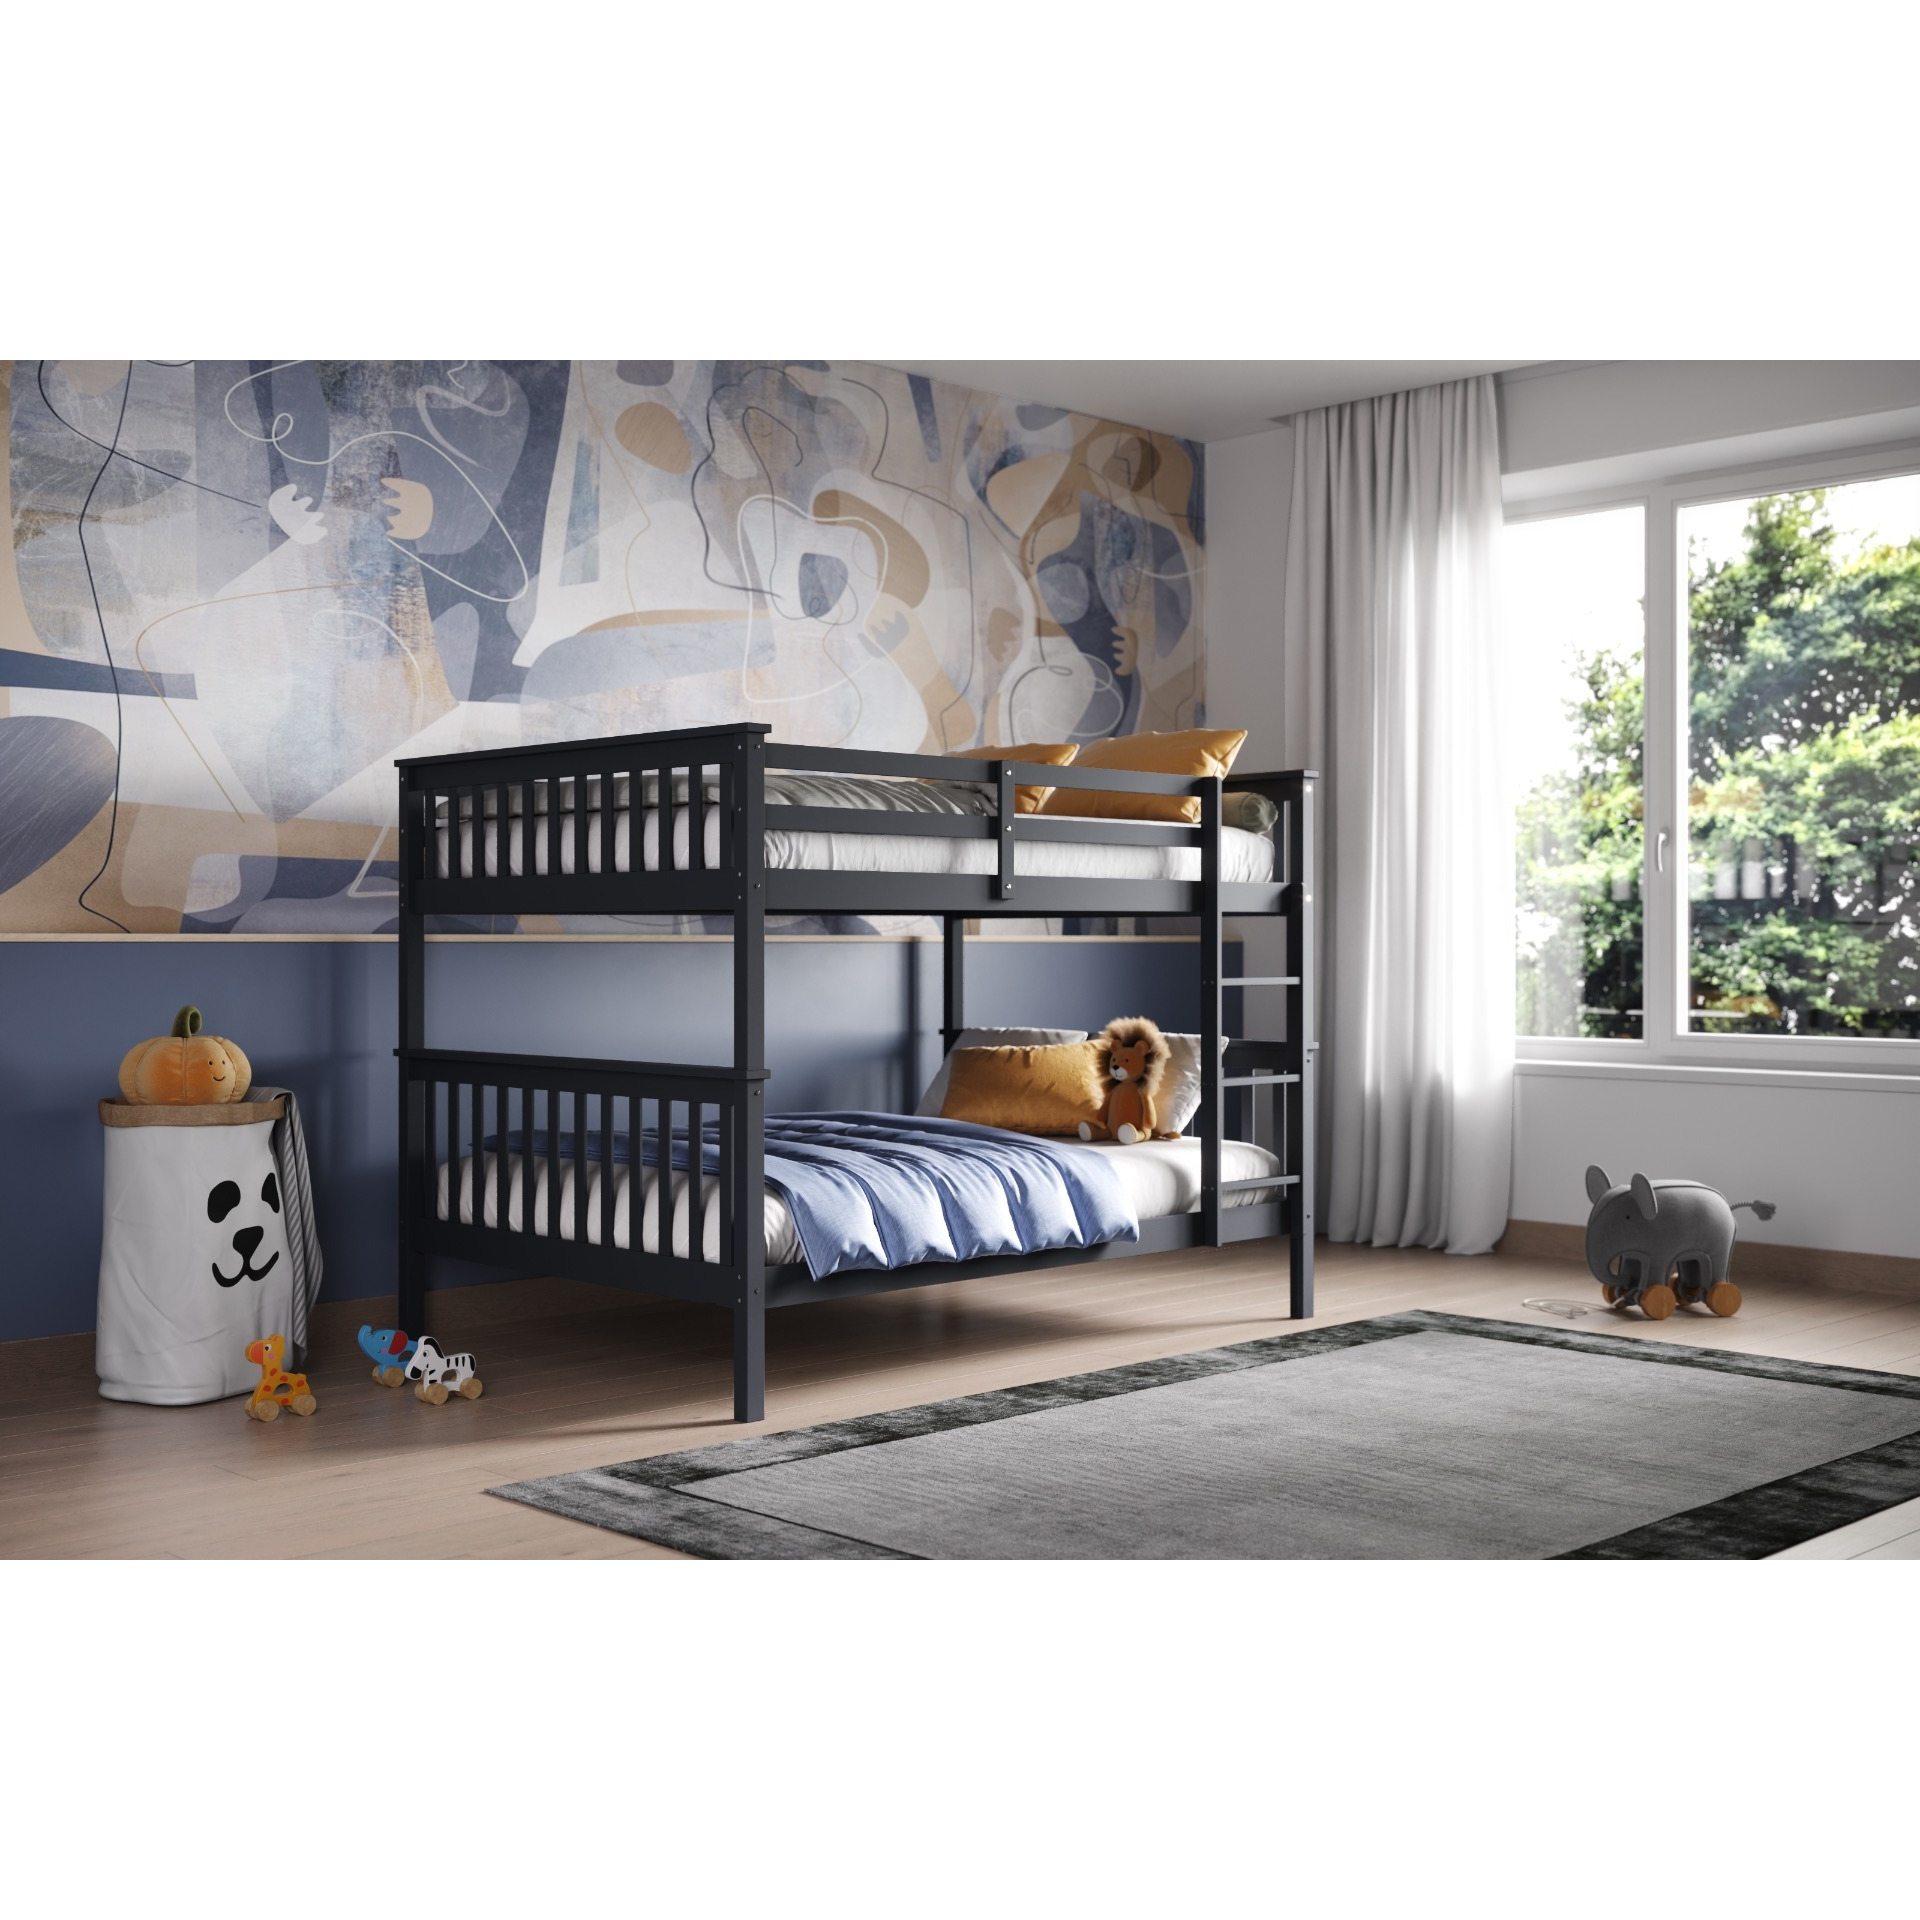 Flair Tetrad Detachable Small Double Bunk Bed Grey - image 1